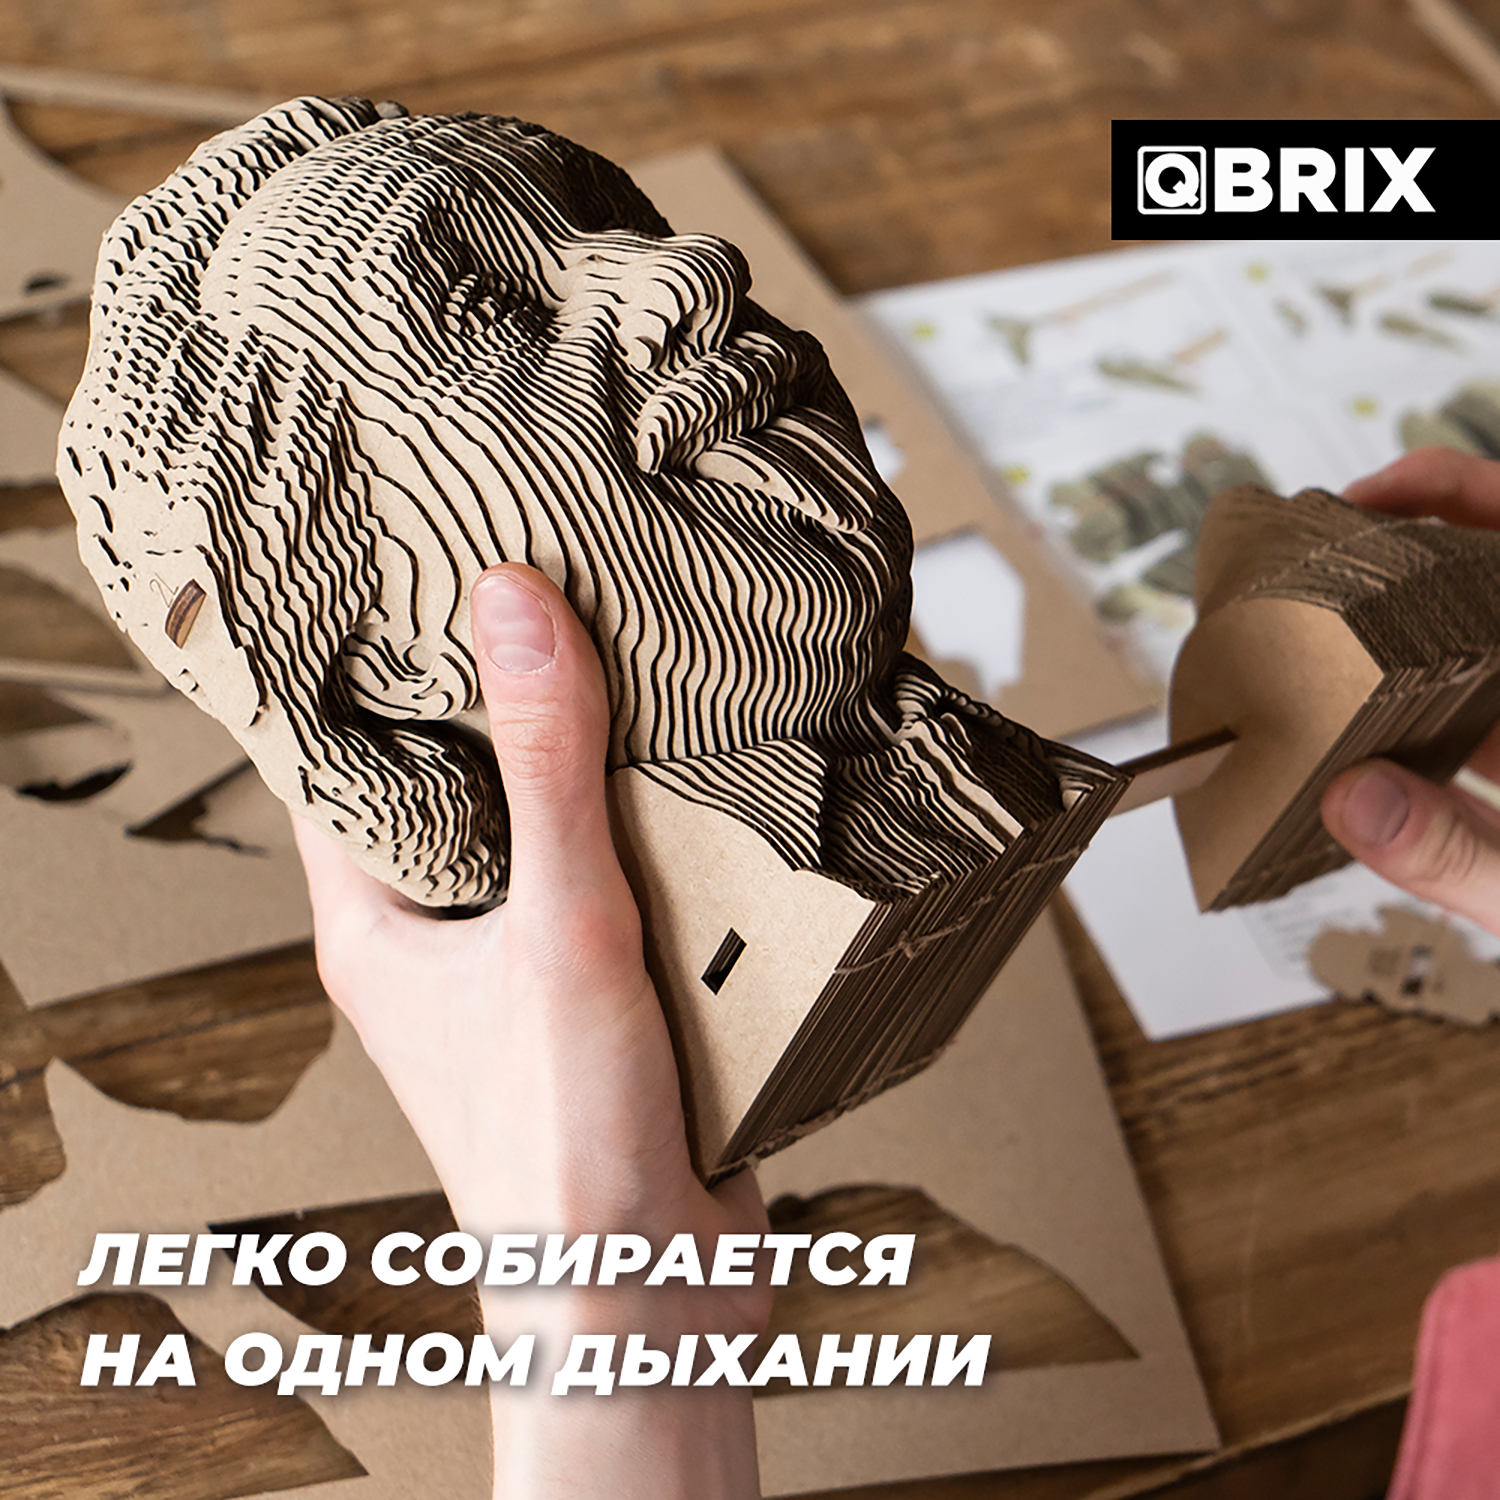 Конструктор QBRIX 3D картонный Эйнштейн 20002 20002 - фото 6